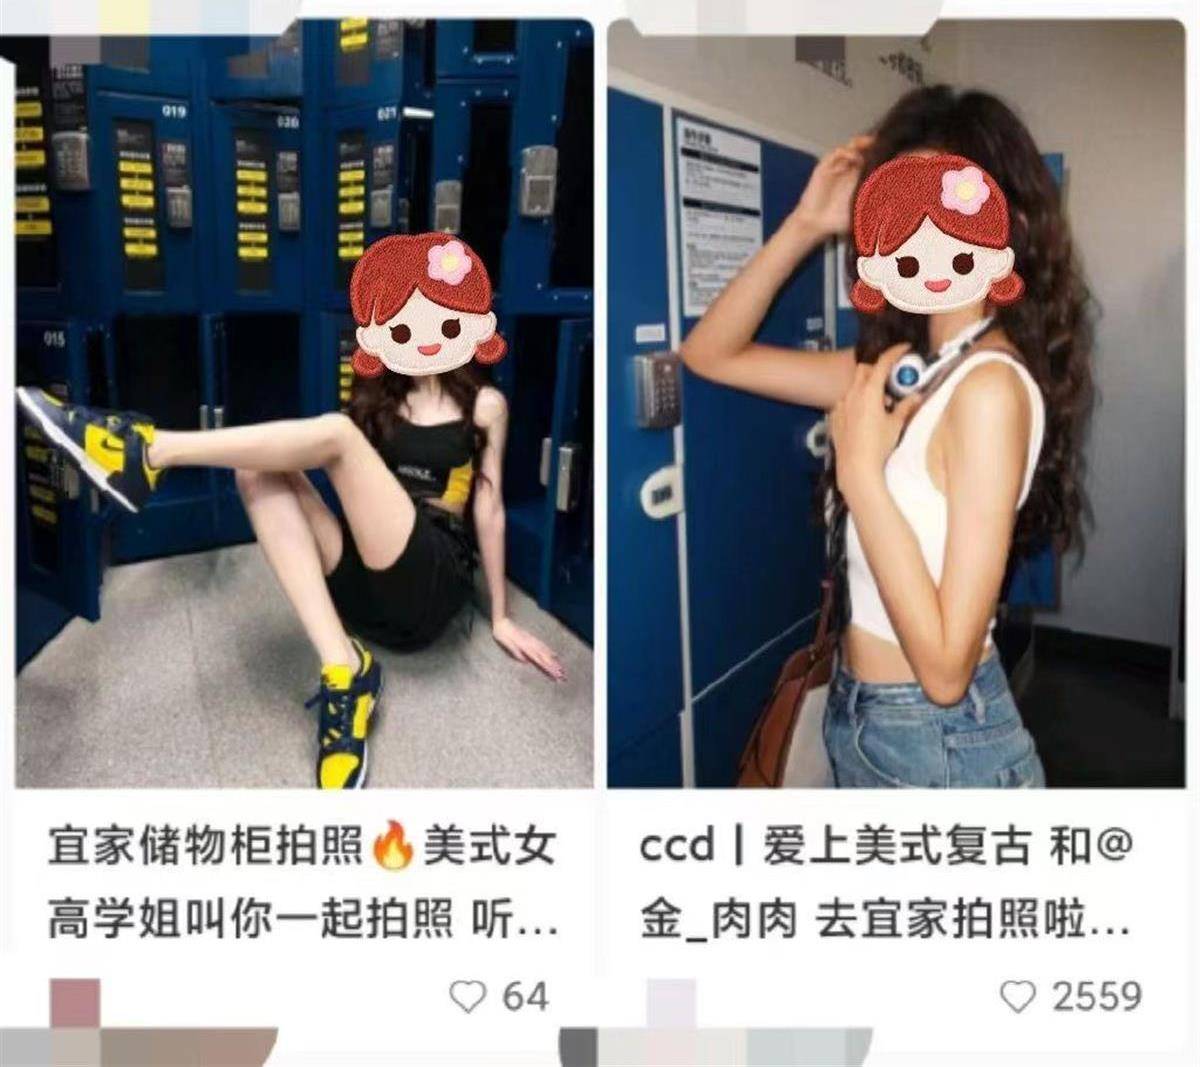 极目锐评|上海宜家储物柜区禁拍“网红照”引争议，应尊重“不想蹭这个流量”的选择